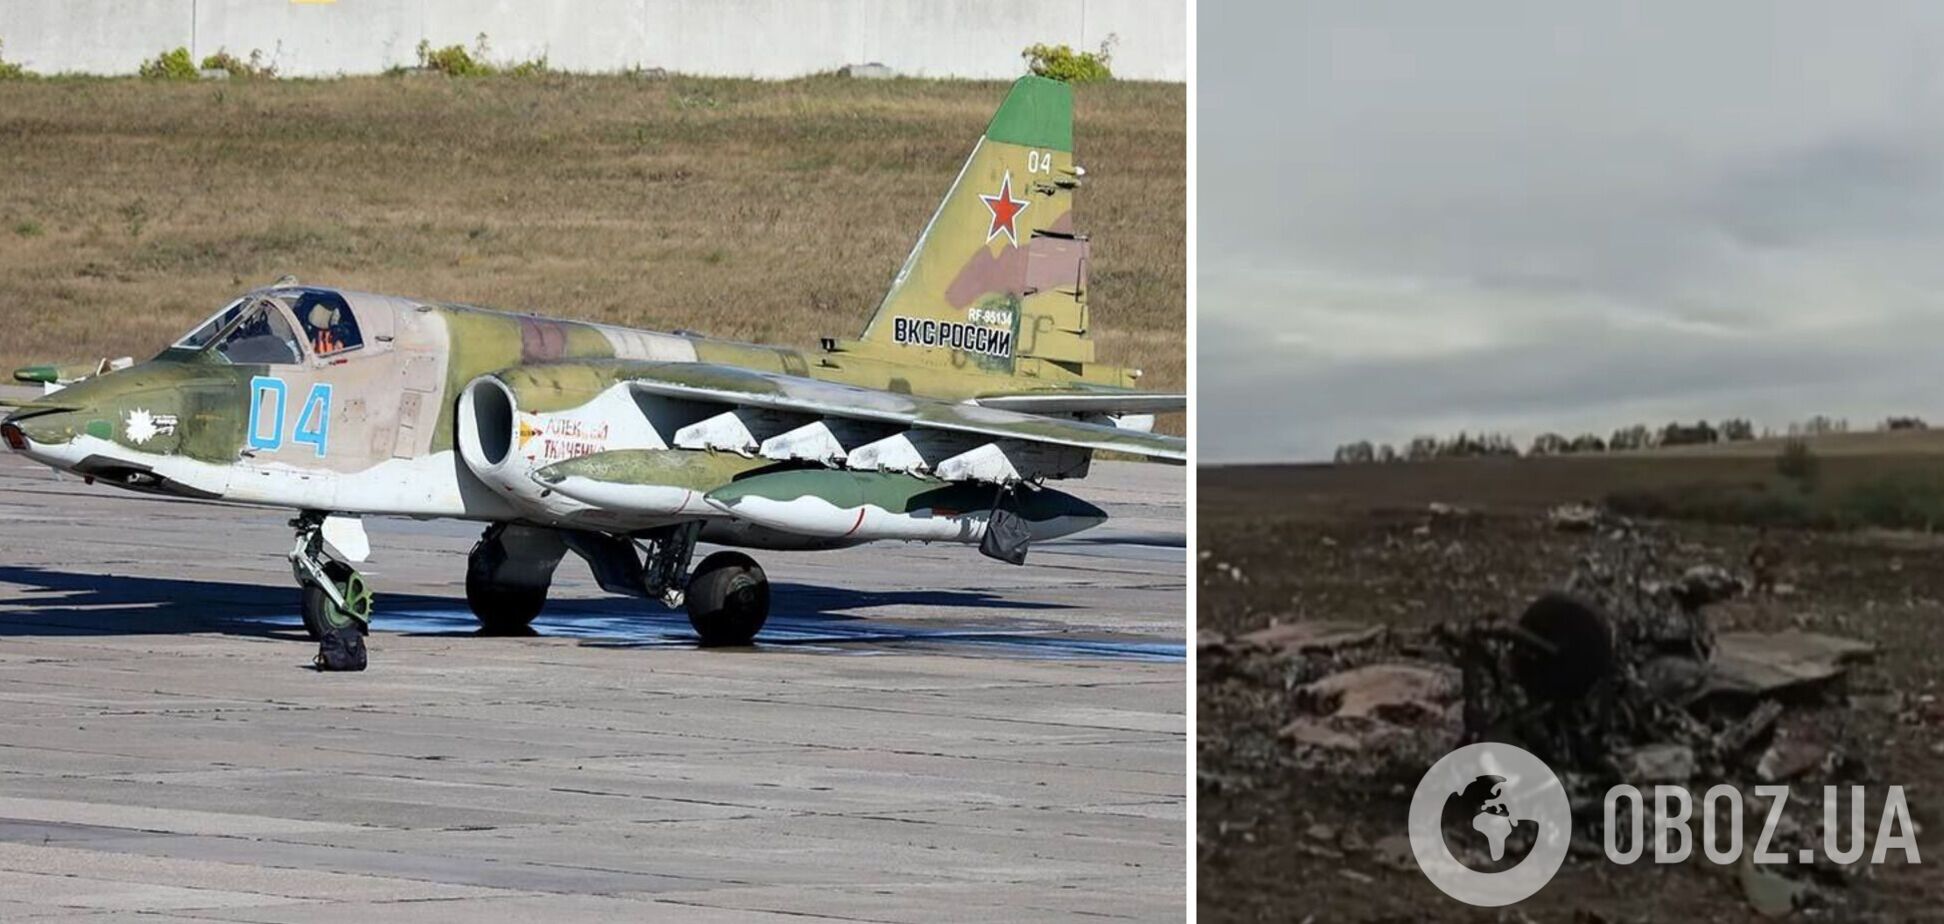 Ще один долітався: українські захисники показали знищений Су-25, який прикривав відхід військ РФ. Відео